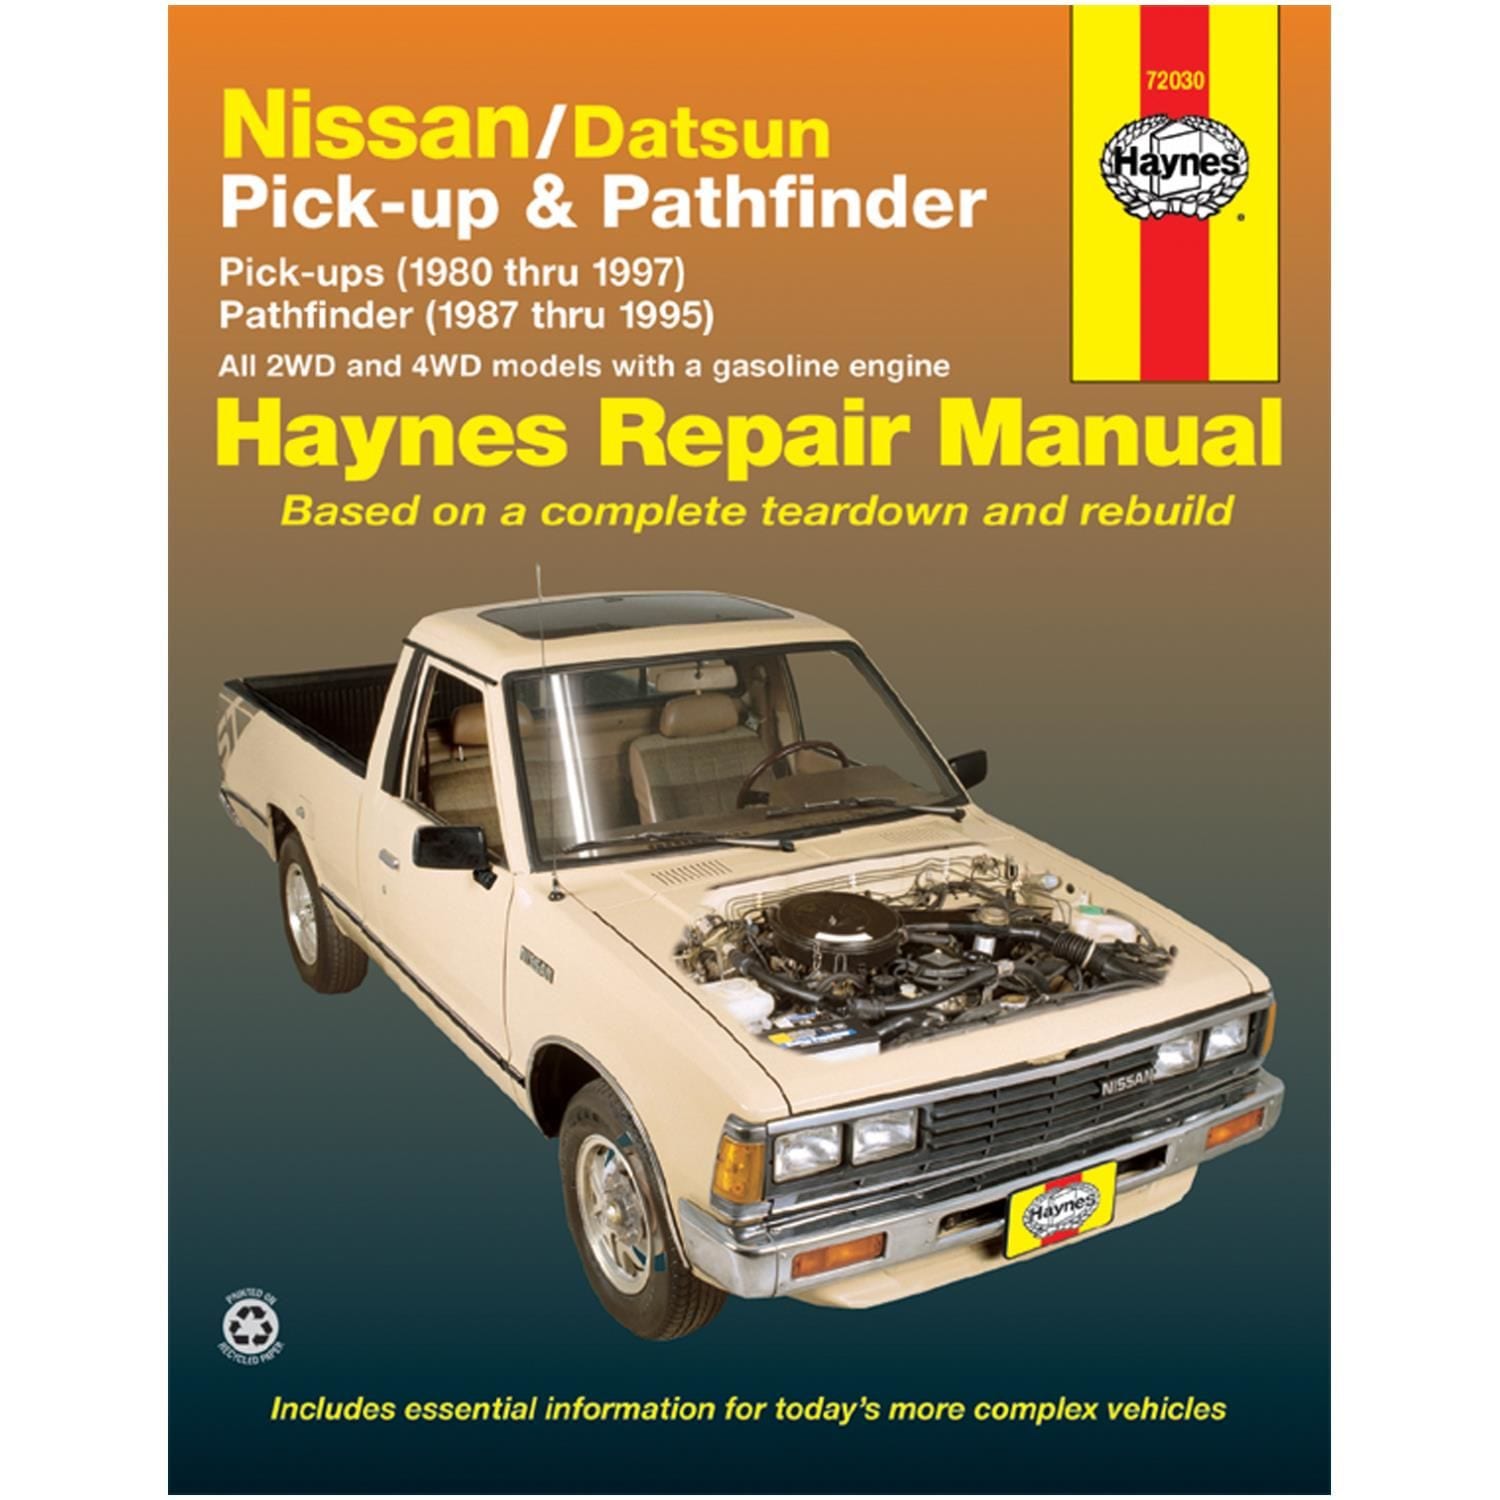 Haynes Vehicle Repair Manual 72030